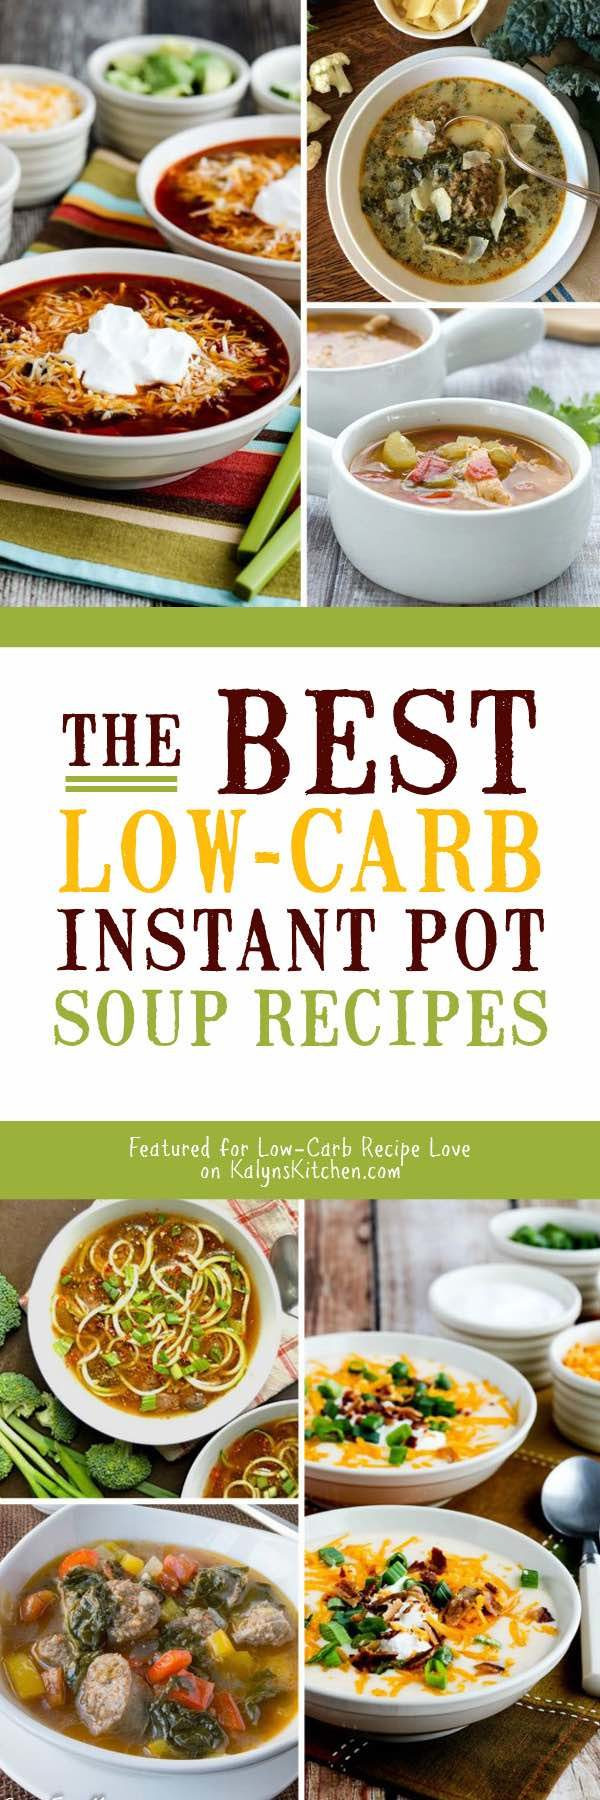 Best Low Carb Instant Pot Recipes
 The BEST Low Carb Instant Pot Soup Recipes Kalyn s Kitchen